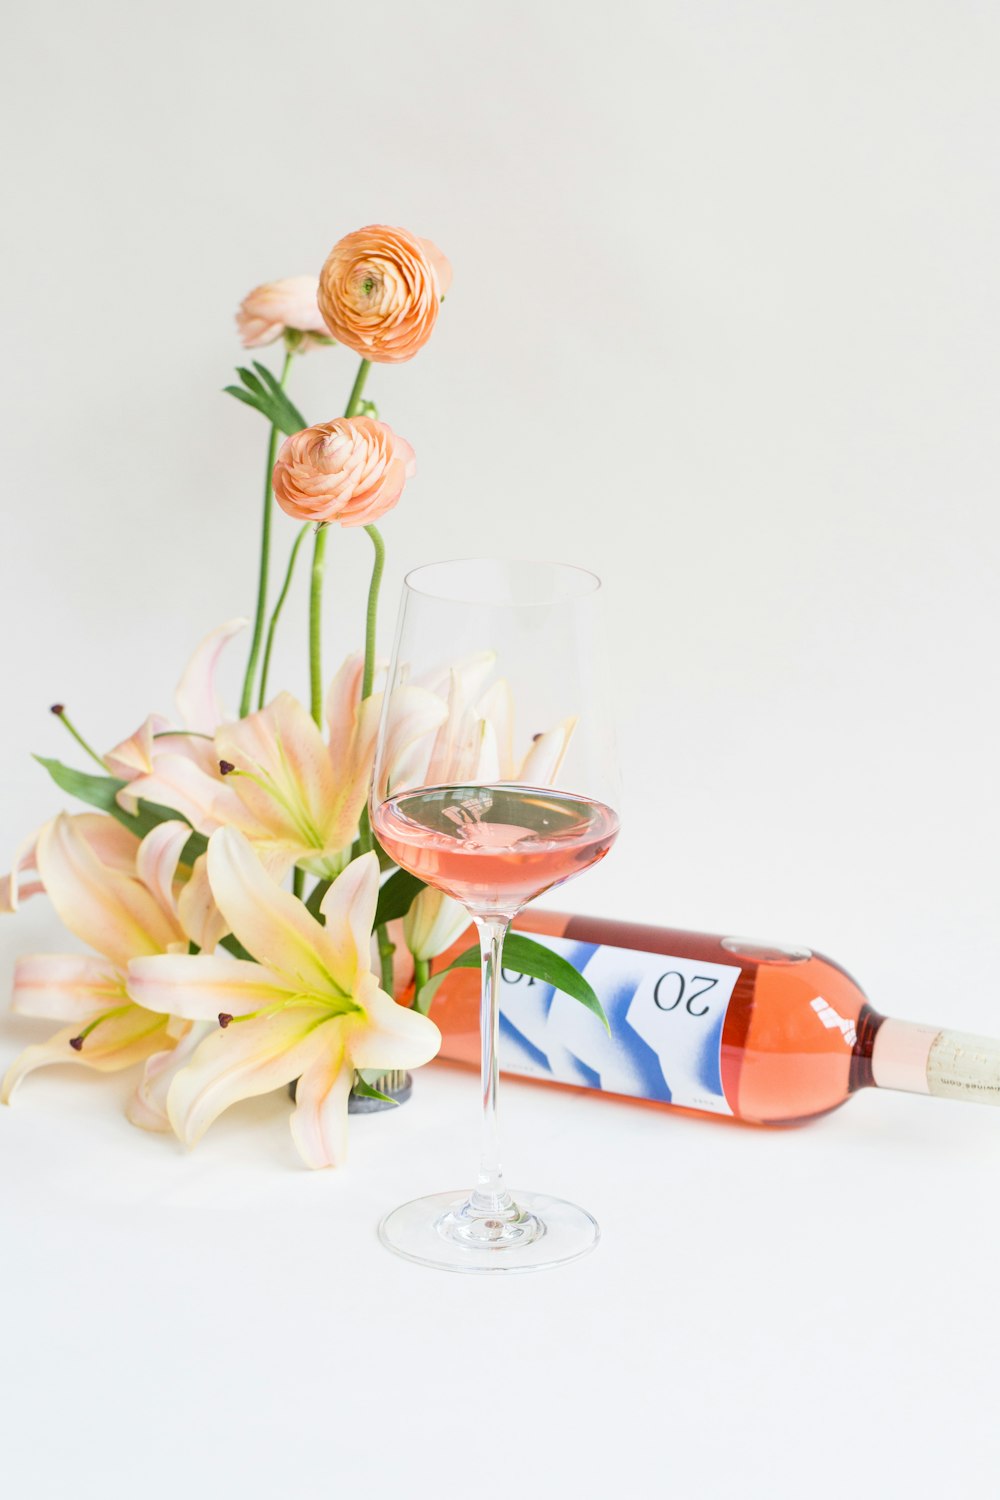 와인 병과 와인 잔 옆에 흰 꽃